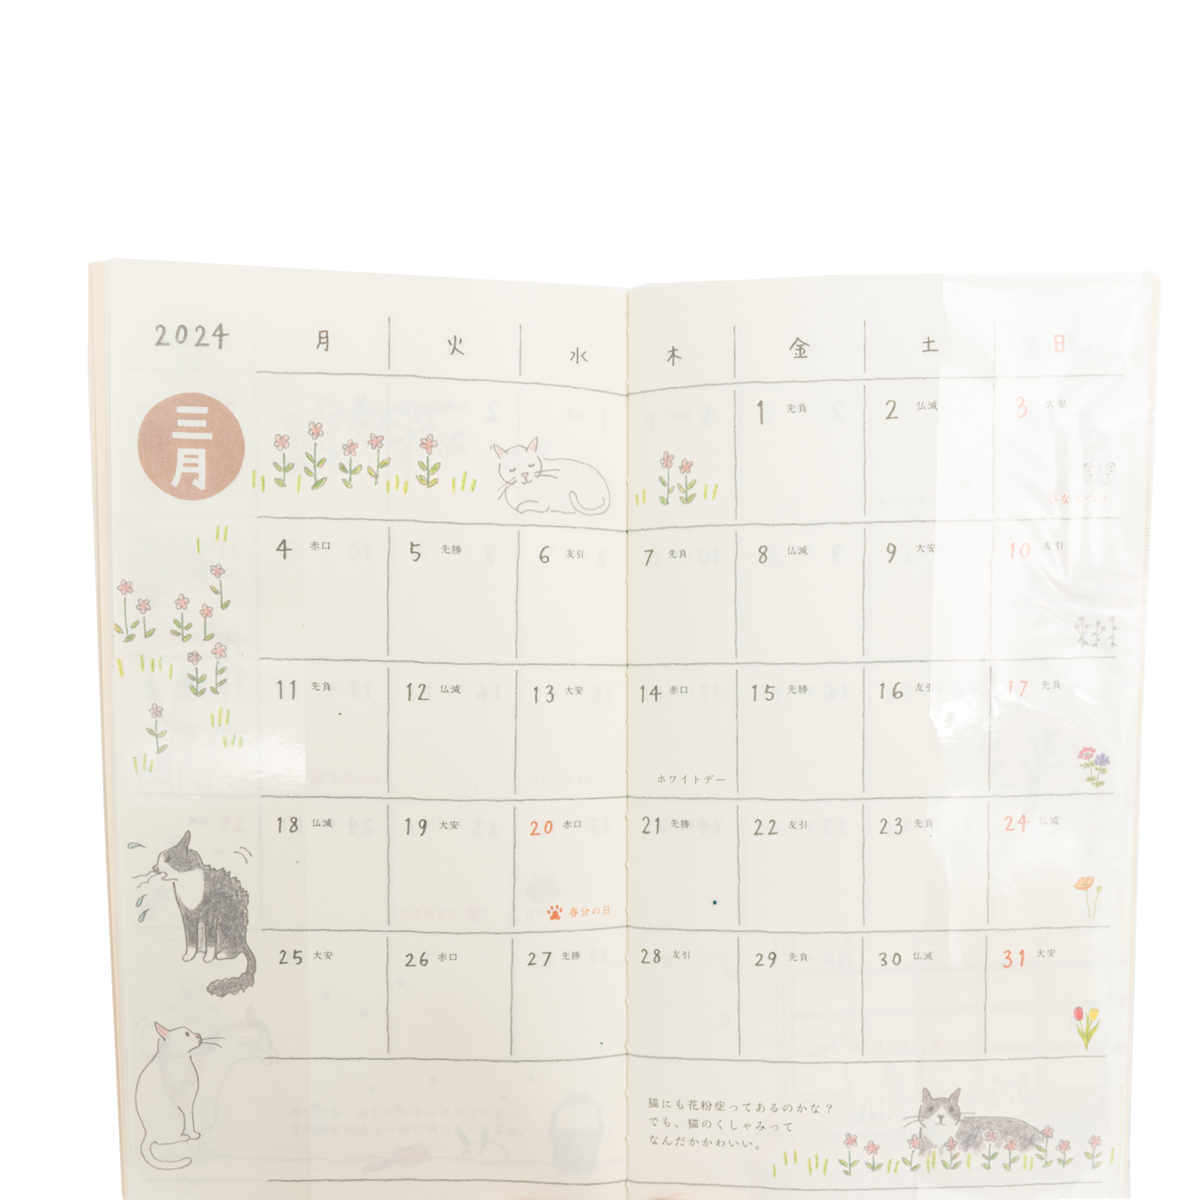 Midori 2024 Pocket Diary Slim- Cats